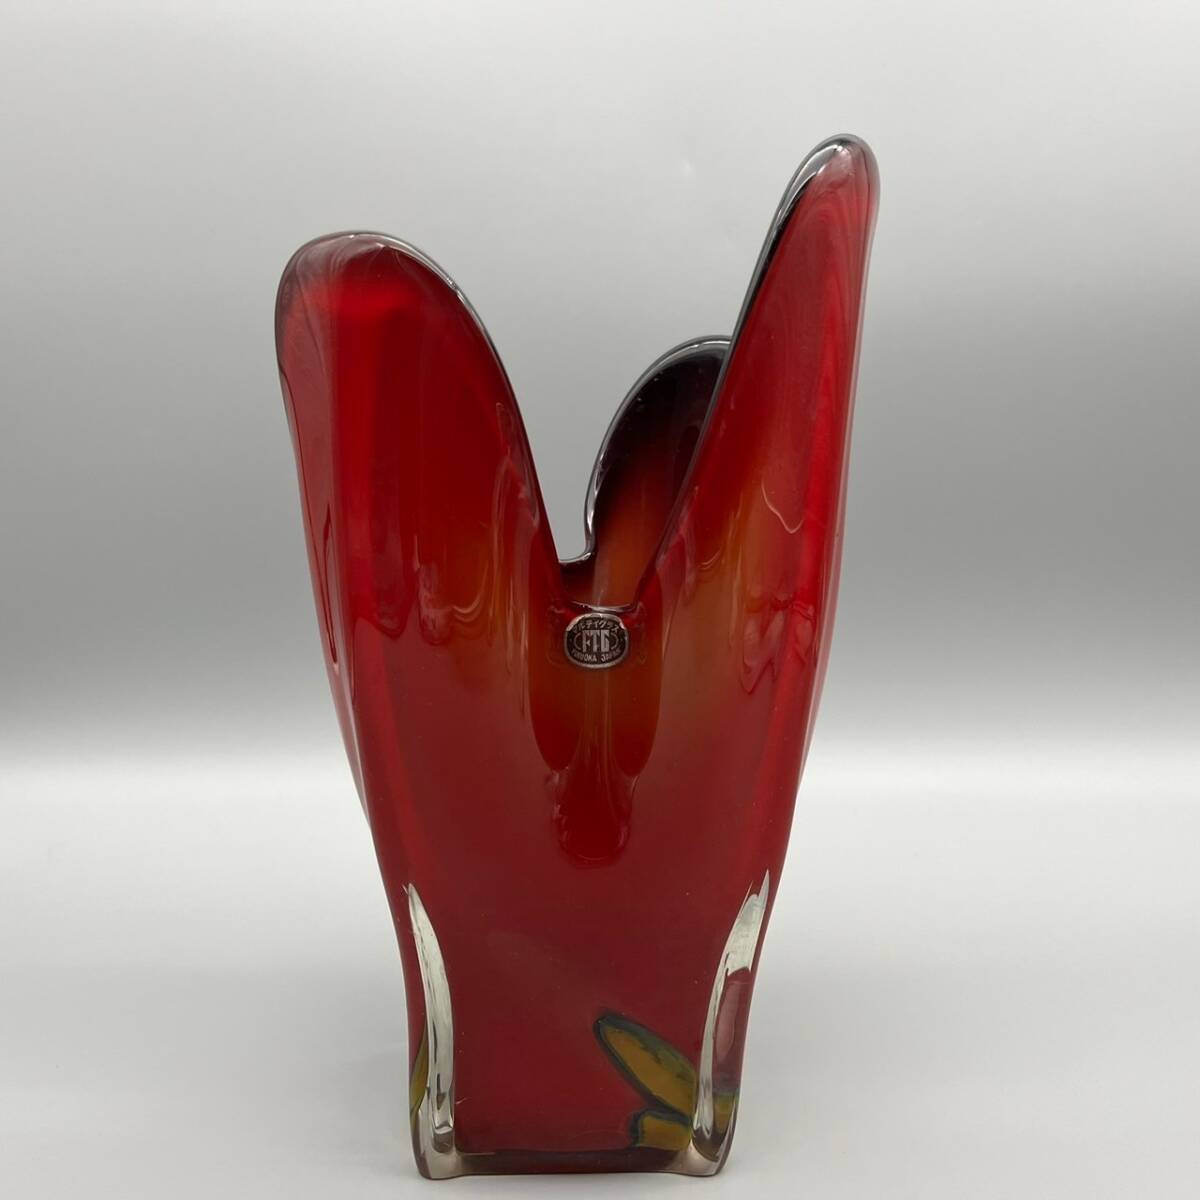 【1円出品】 マルテイグラス 花瓶 フラワーベース フラワーアレンジメント レッド系 赤 おしゃれ 個性 独創的の画像1